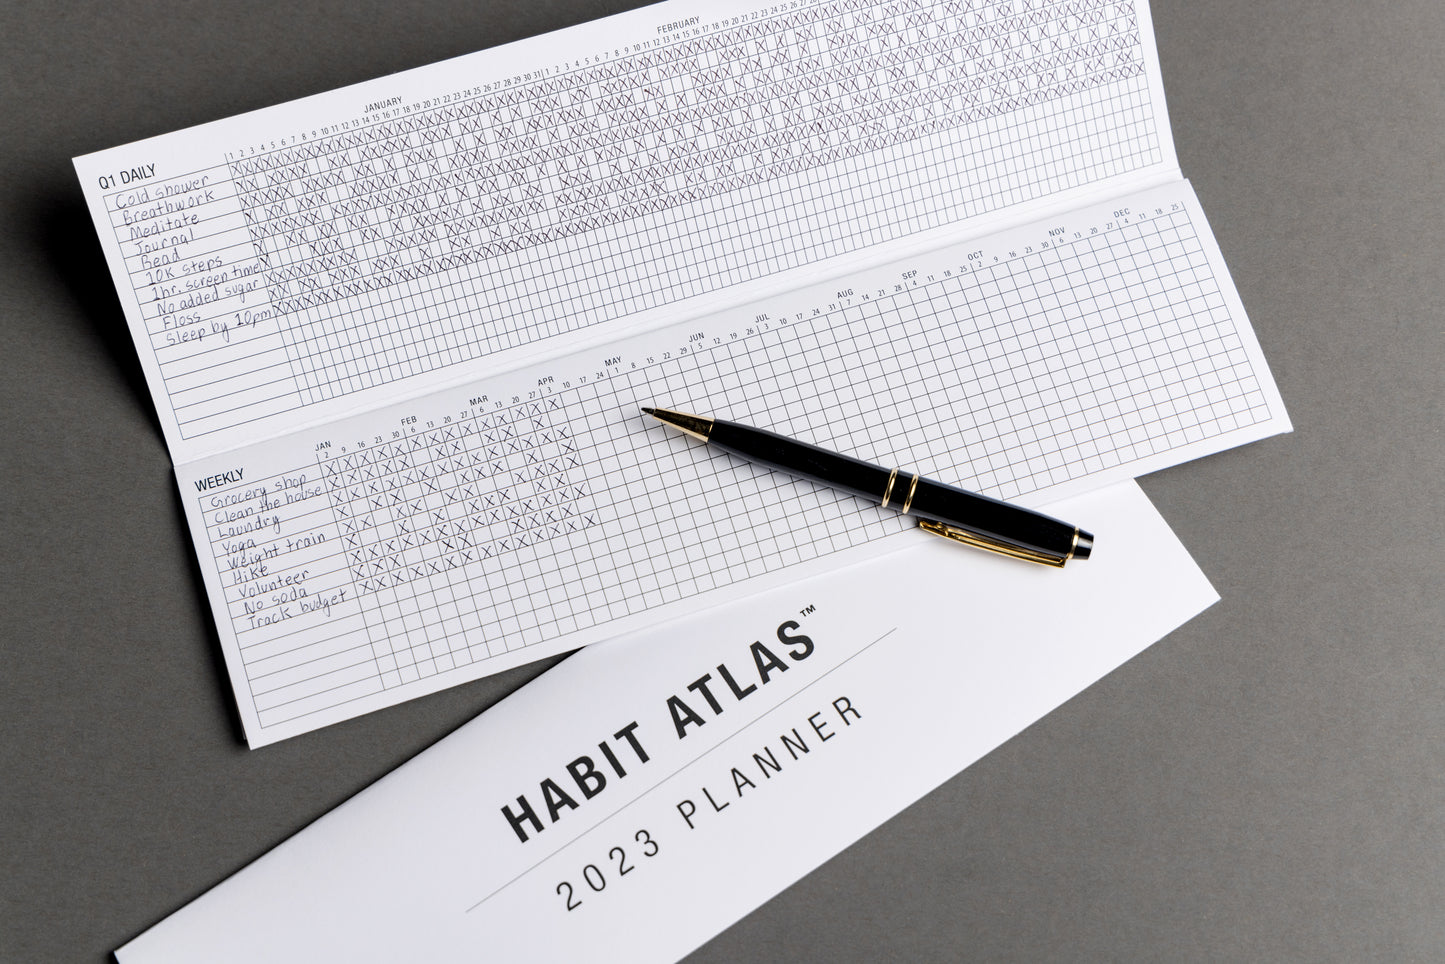 2023 Habit Atlas Folding Planner